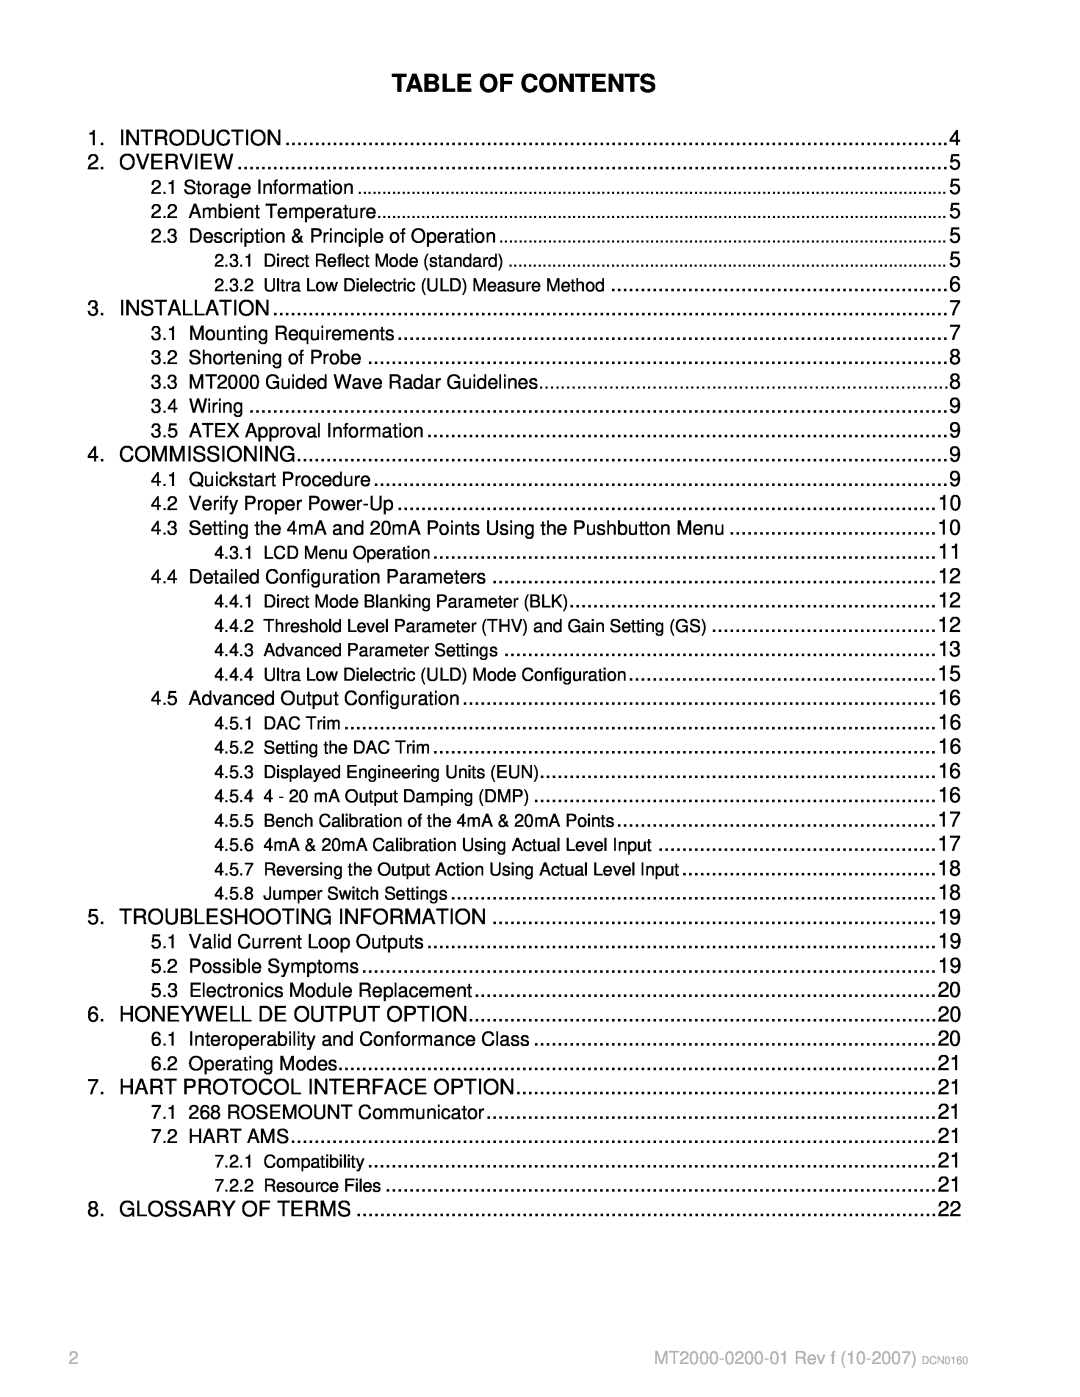 K-Tec MT2000 manual Table Of Contents 